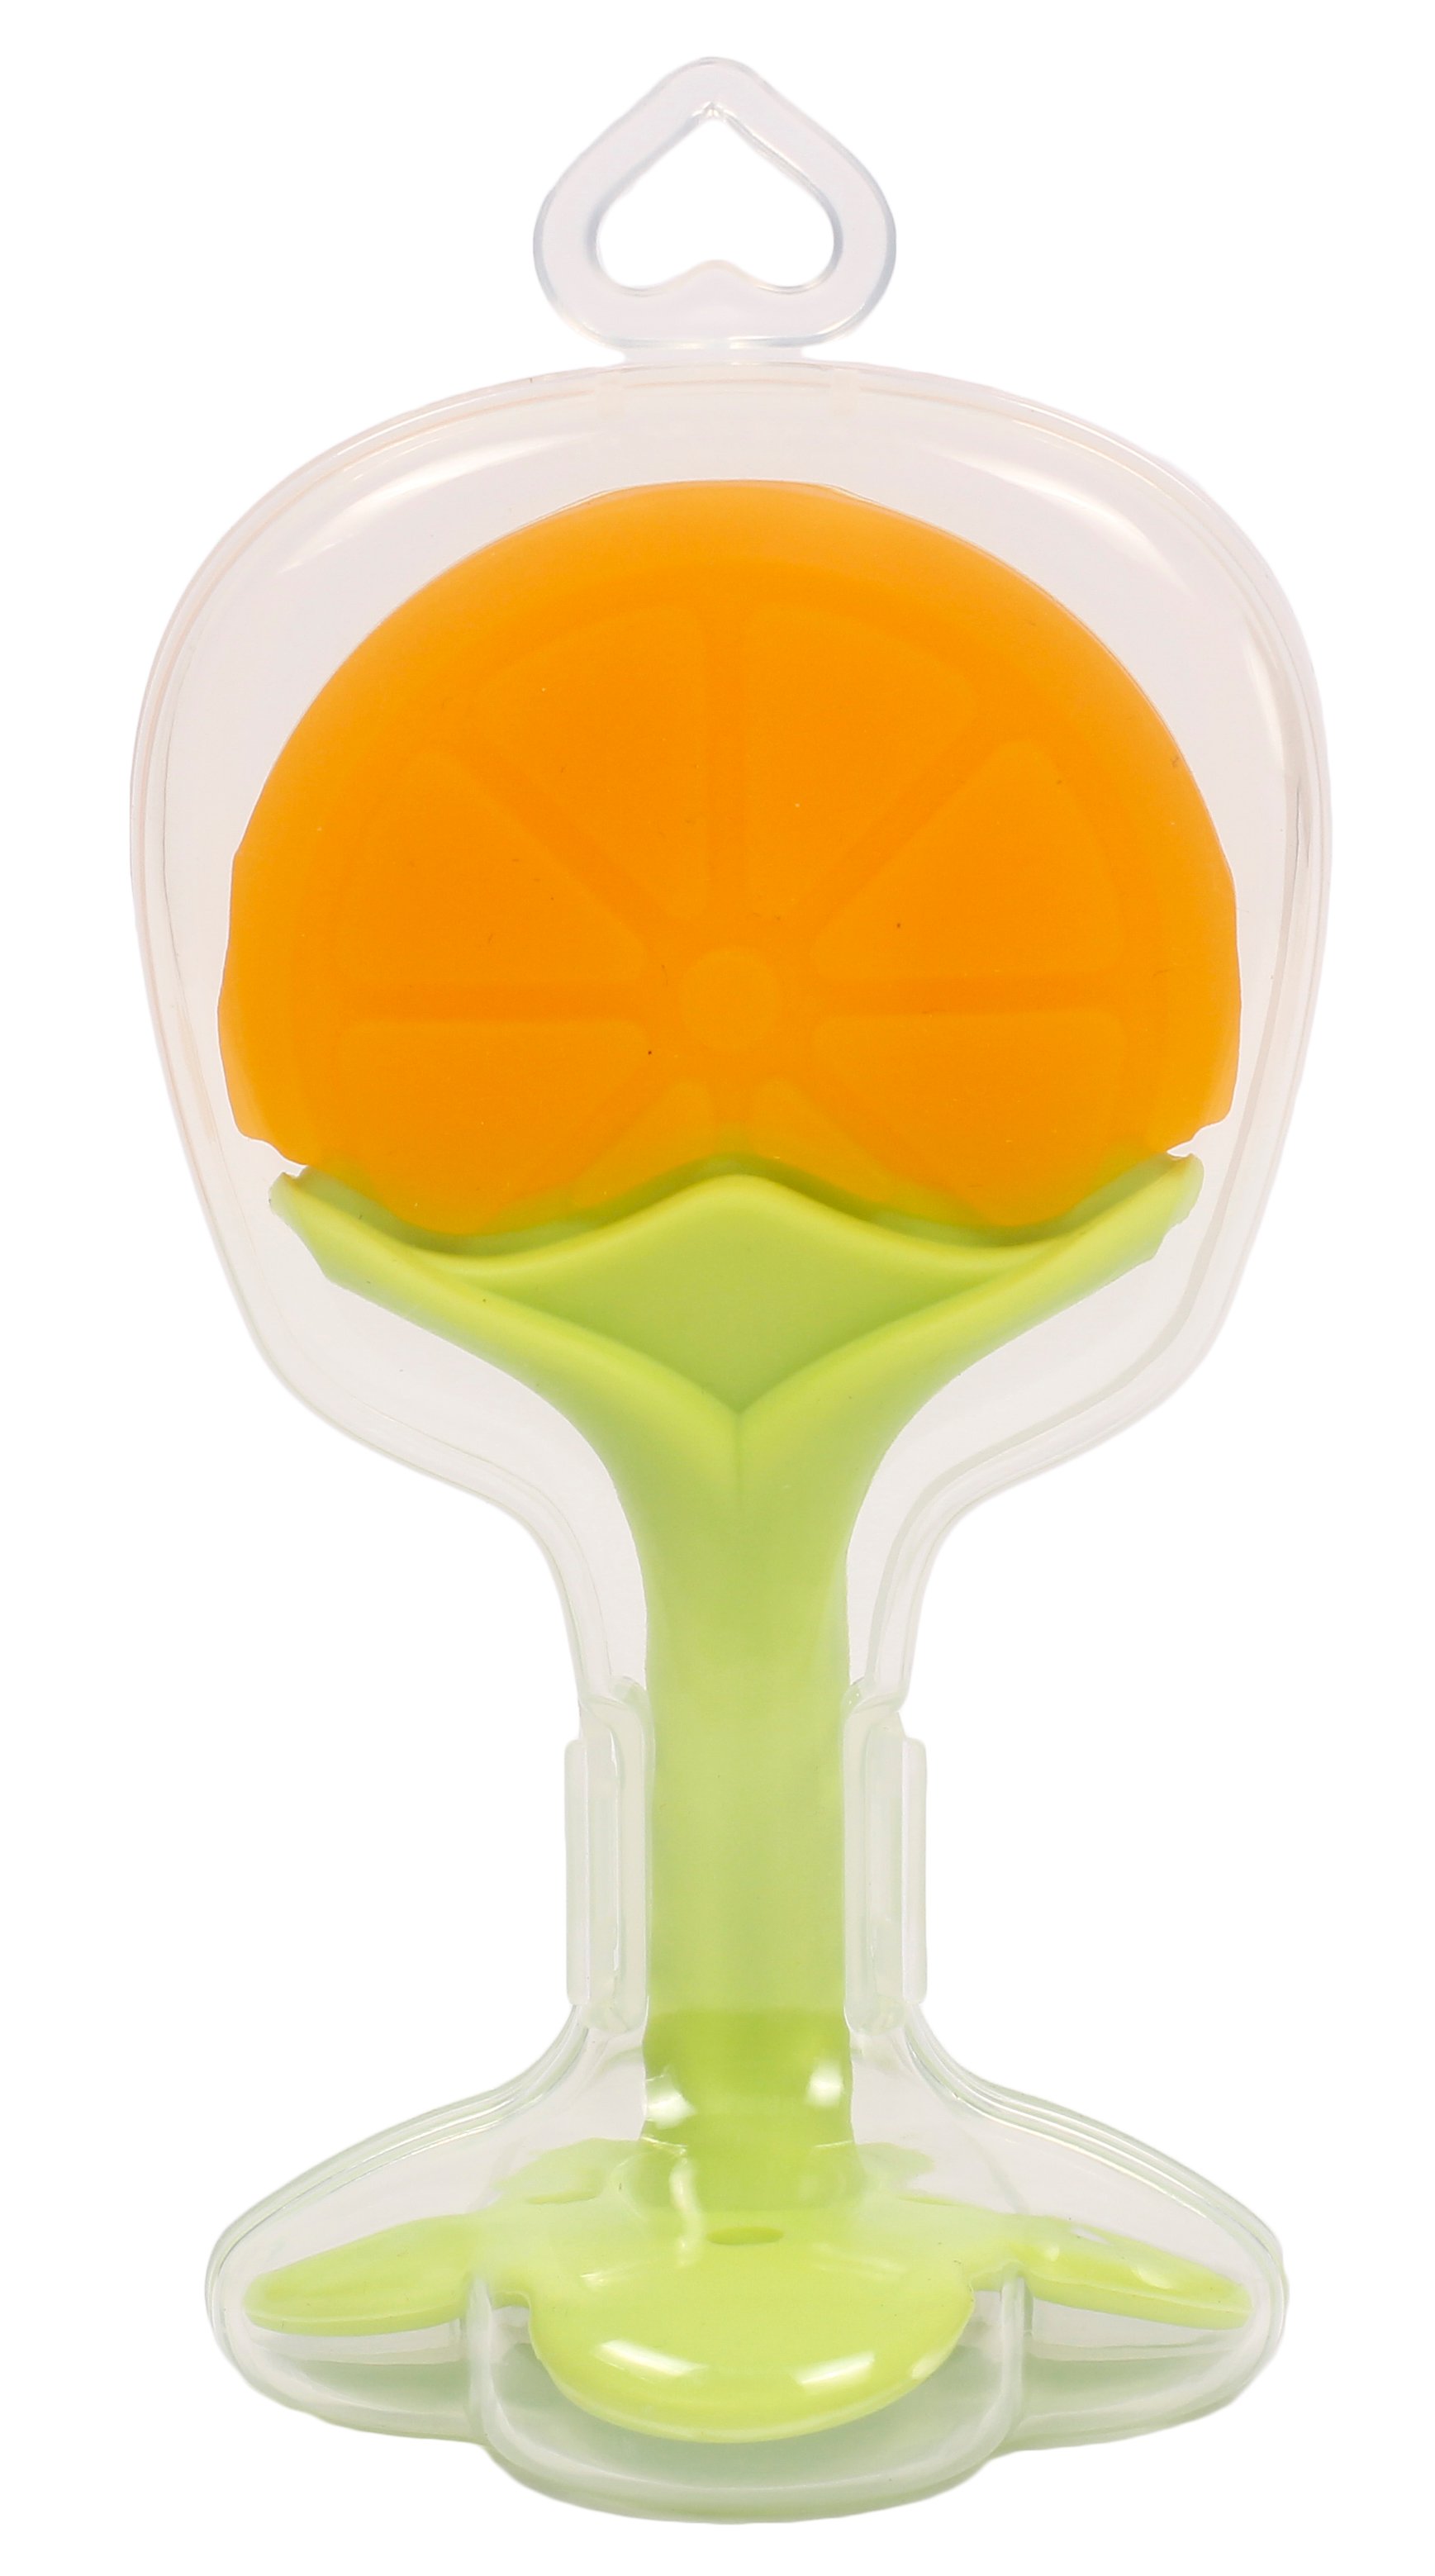 Прорезыватель для зубов Lindo Апельсин, силиконовый, оранжевый с салатовым (LI 320 апел) - фото 2